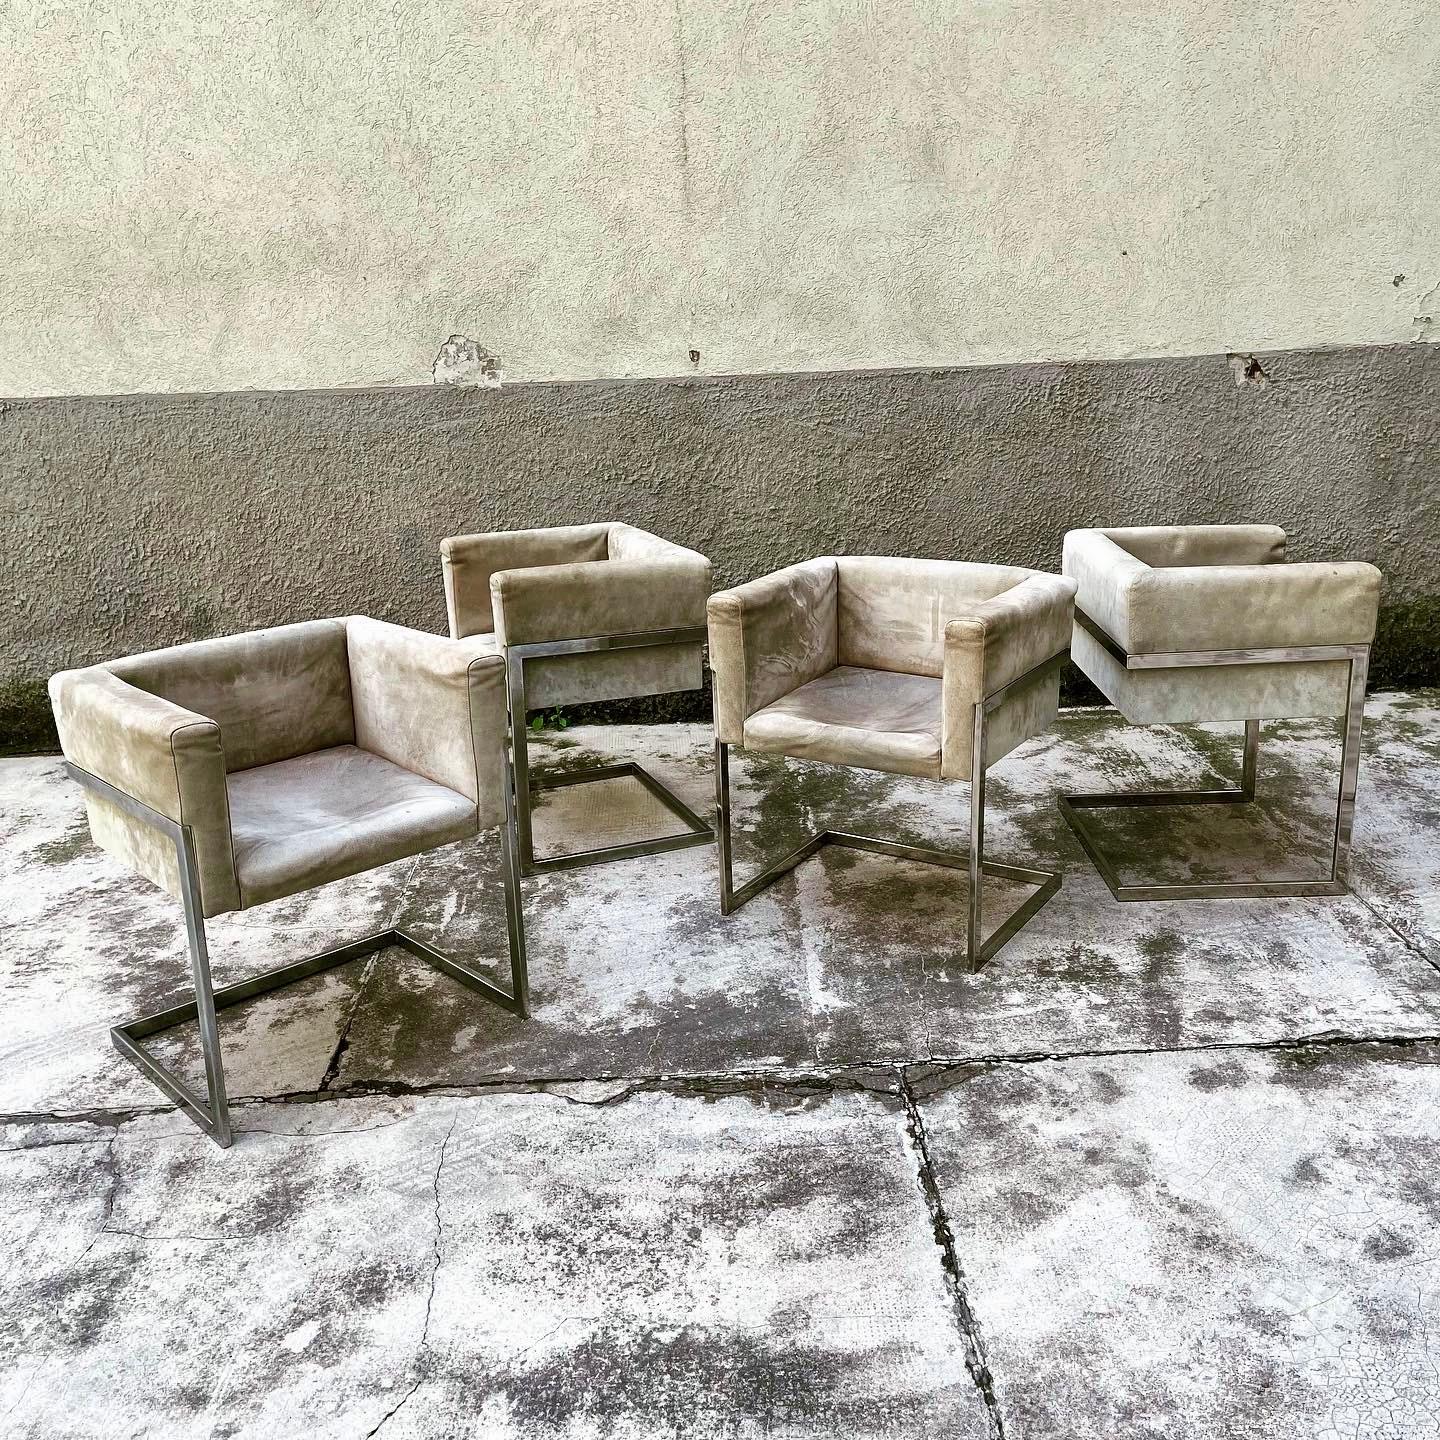 Progettate negli anni '70, queste sedie hanno una solida struttura in metallo cromato, seduta a pozzetto rivestita in pelle scamosciata color grigio. Non hanno difetti sulla pelle.

Sono state acquistate e abbinate dal vecchio proprietario, con un